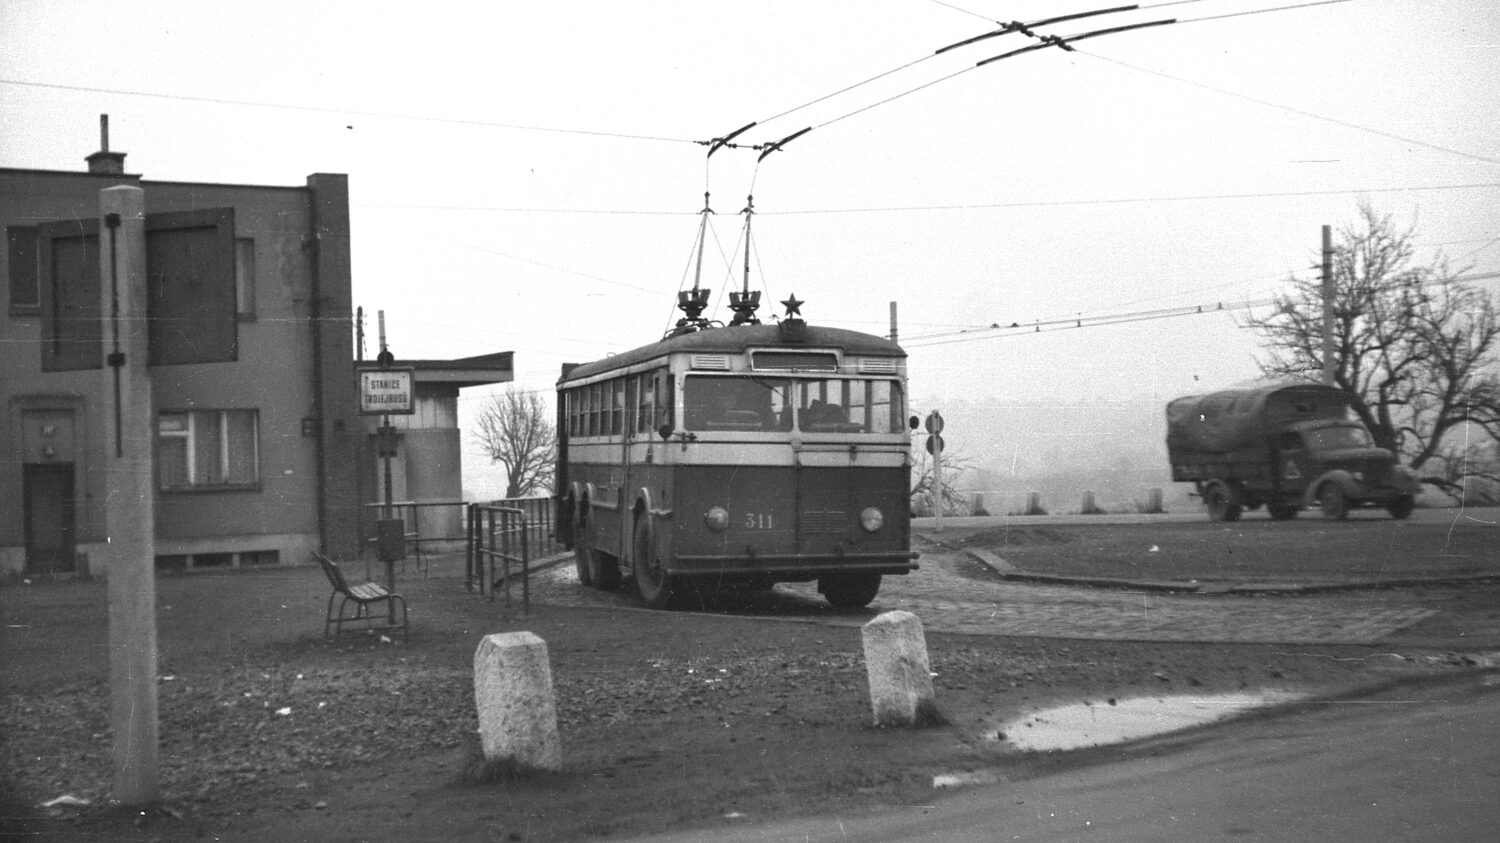 Na trati linky č. 59 se neobjevovaly jen trolejbusy Tatra 400, jak dokazuje tento snímek s vozem Praga TOT z koncové smyčky. Vůz ev. č. 311 byl vyroben v roce 1938. Celkem měla Praha 12 trolejbusů Praga TOT (včetně prototypu), z nichž poslední dojezdily v roce 1959. Prototyp se podařilo zachránit a je dnes ozdobou muzea pražské MHD. (foto: archiv DPP)